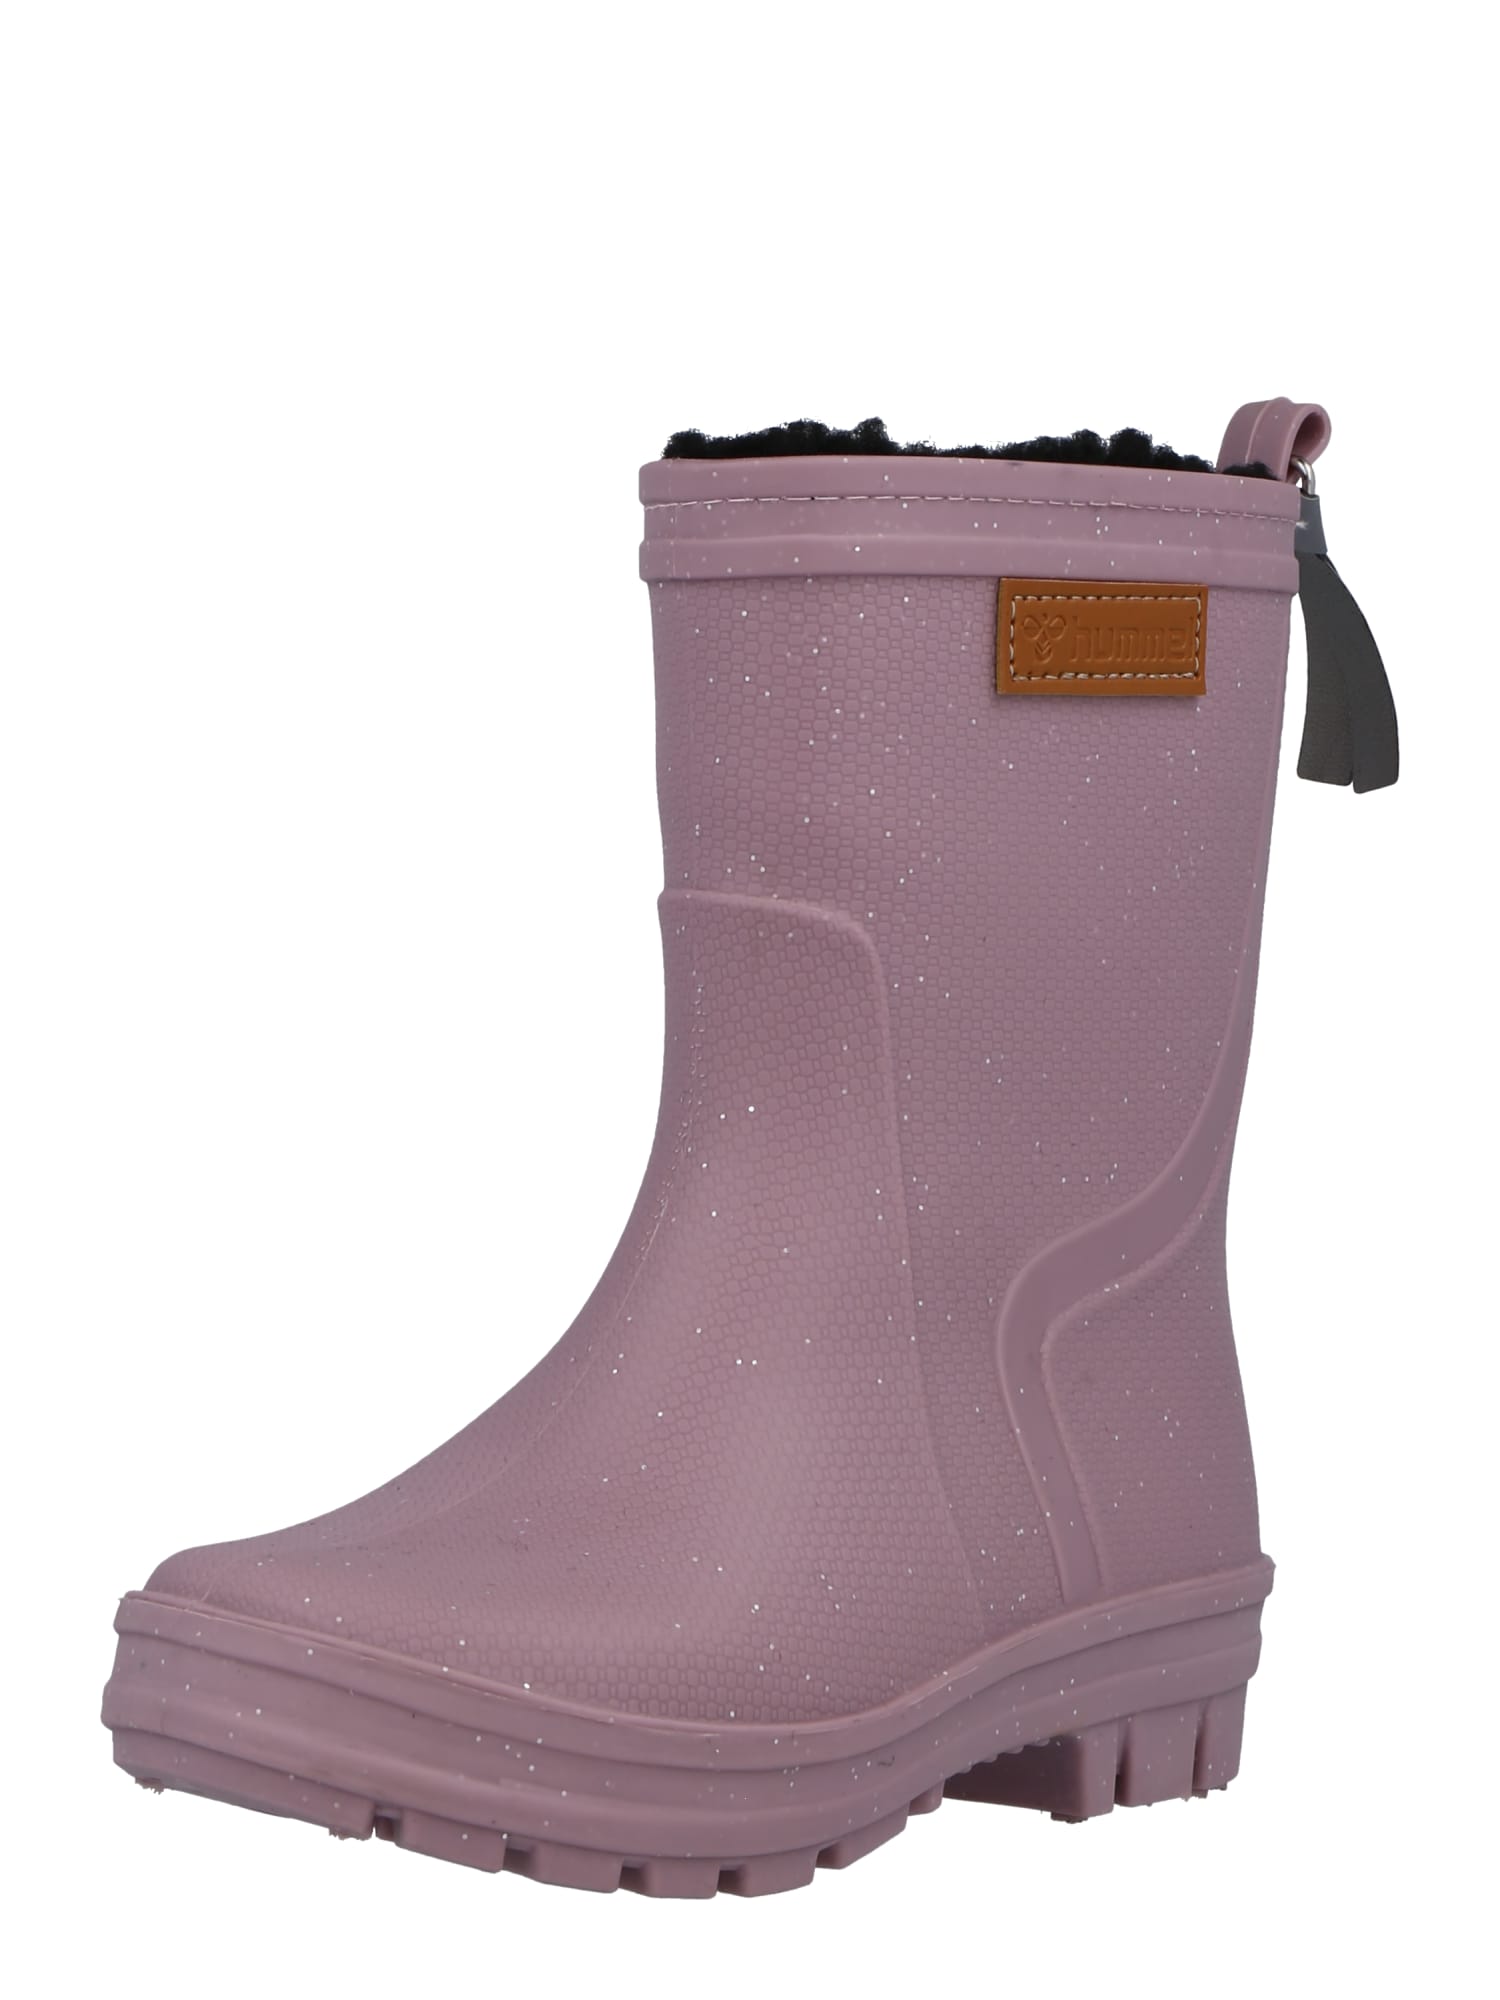 Hummel Guminiai batai šviesiai ruda / ryškiai rožinė spalva